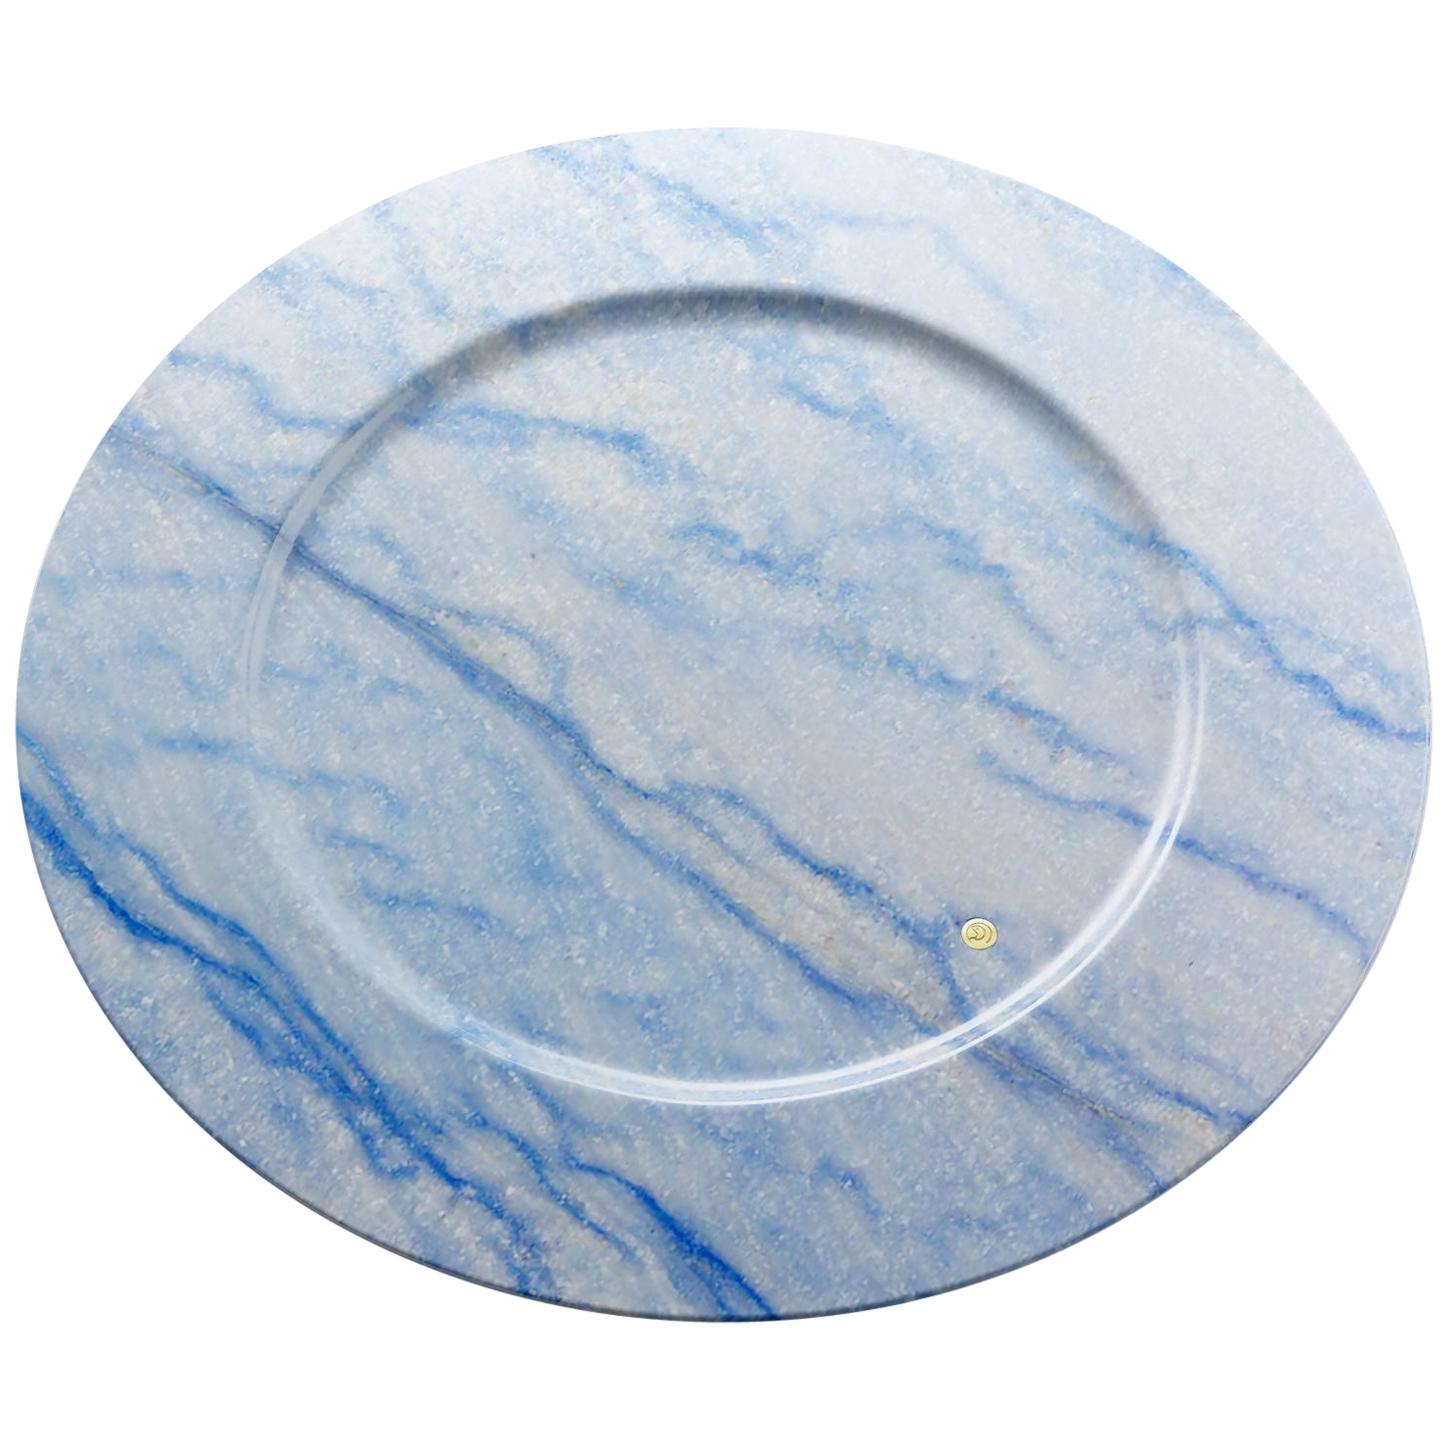 Charger Plate Platters Serveware Blue Azul Macaubas Marble Handmade Design